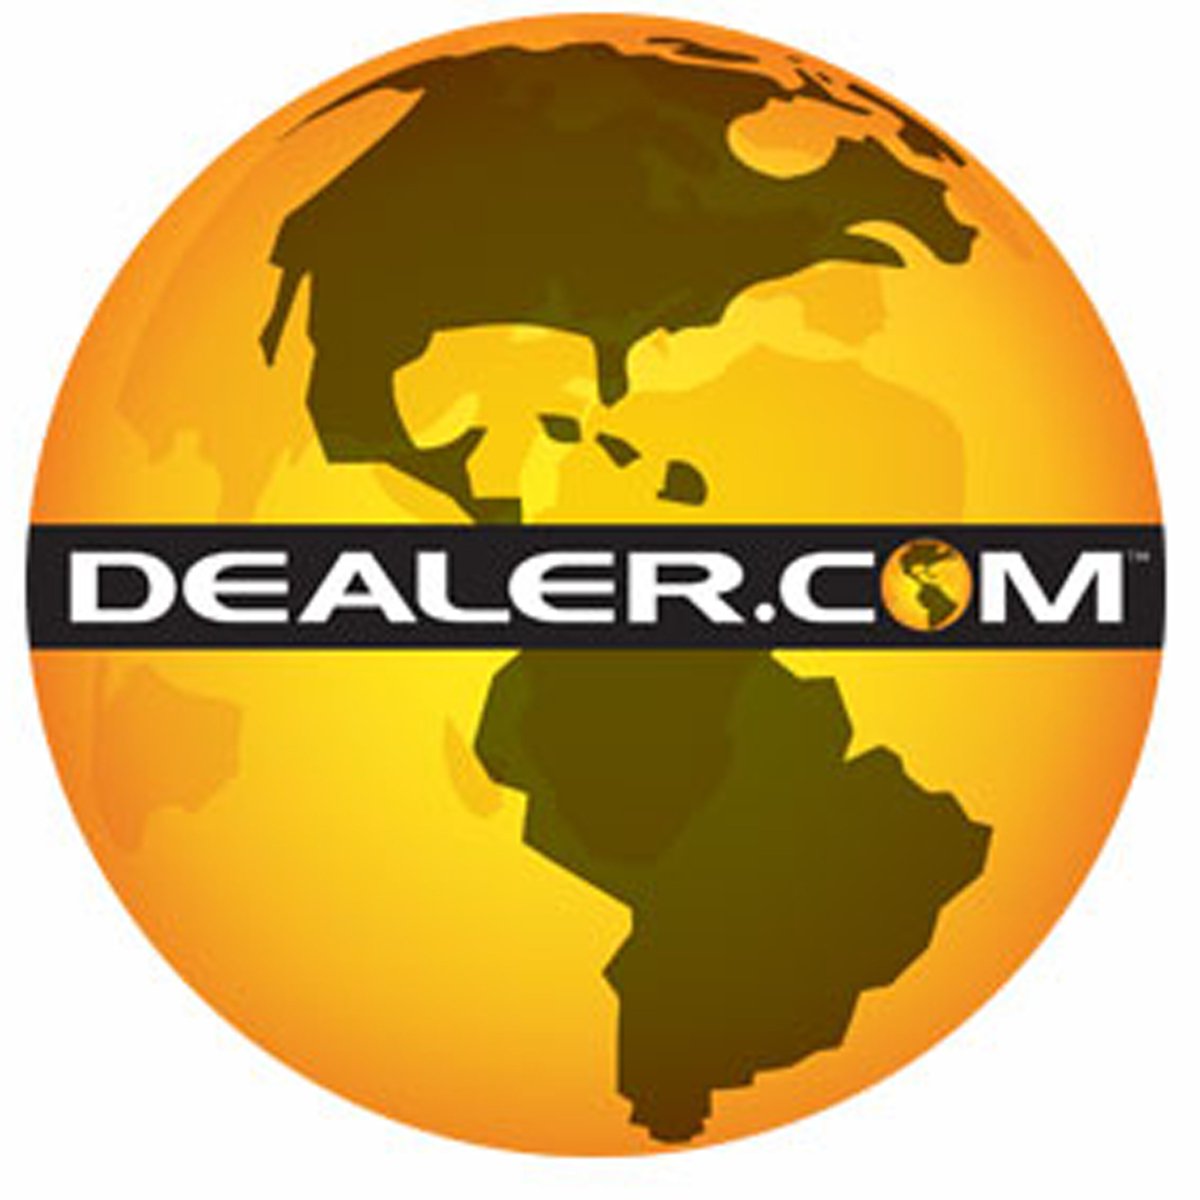 Dealer.com